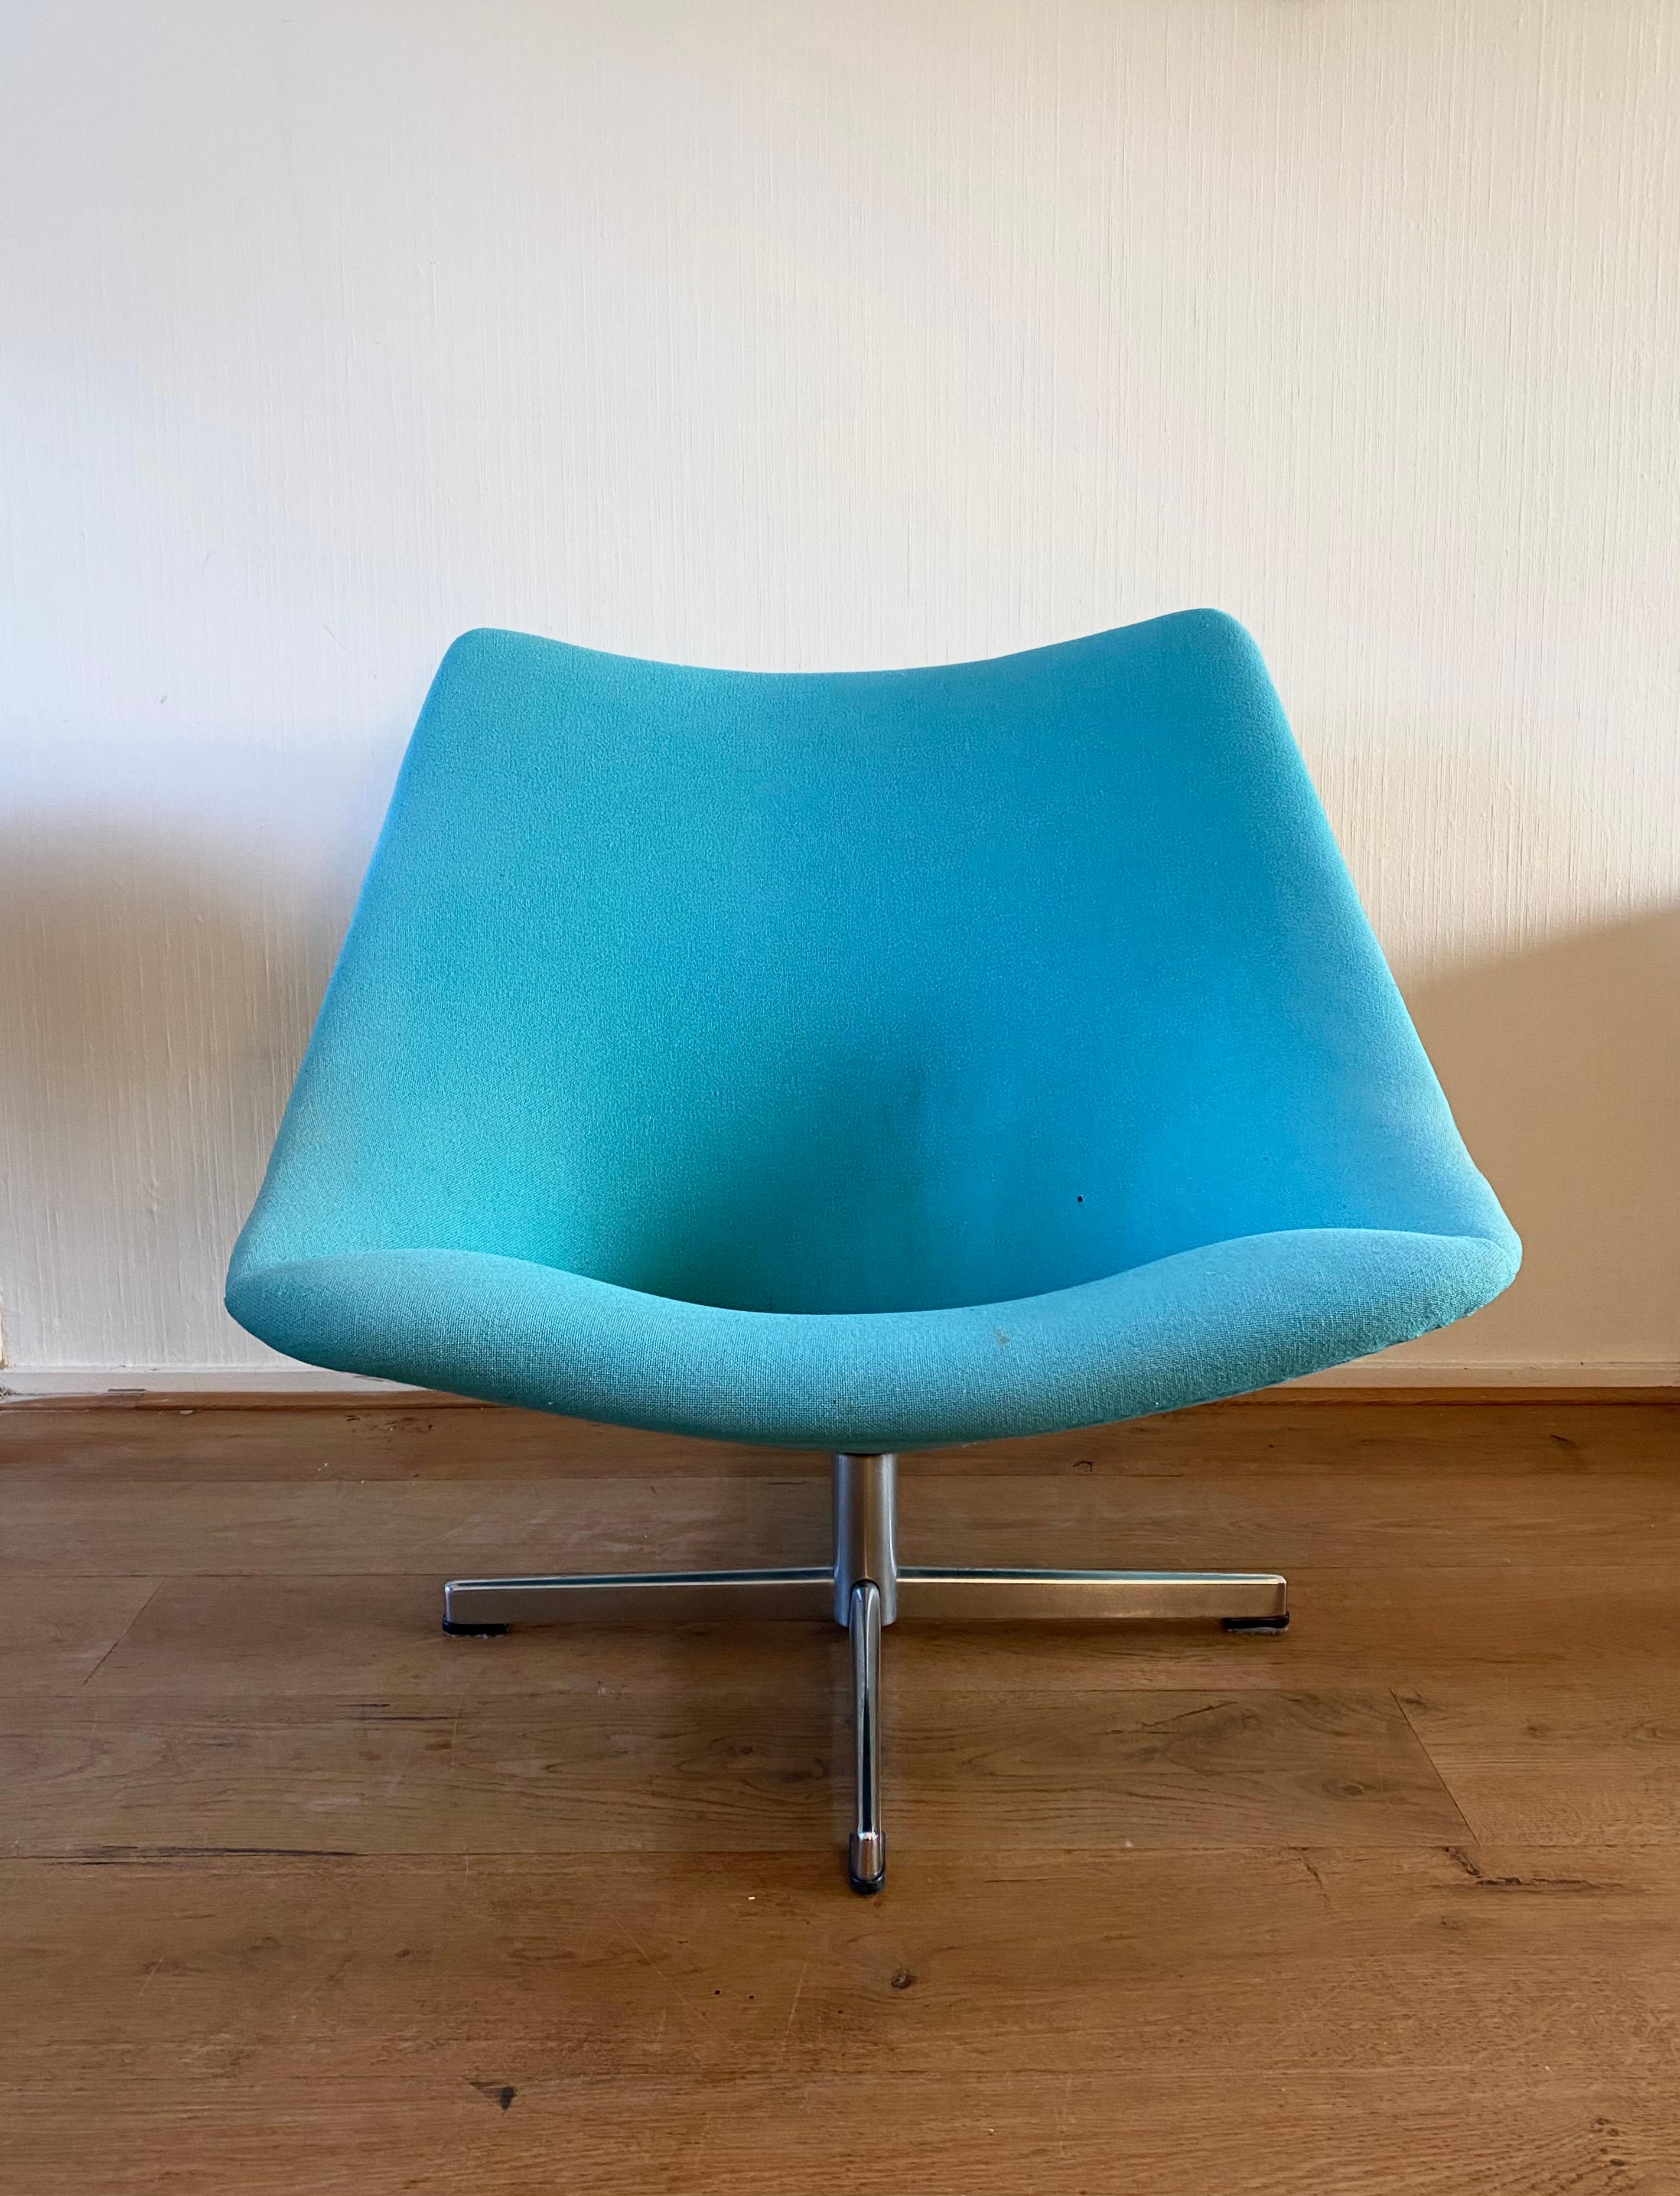 Ungewöhnliche Version des Oyster-Stuhls von Pierre Paulin für Artifort. Die Stühle verfügen über eine große, bequeme Sitzfläche mit dem originalen mint/aquafarbenen Stoff und einem Metallstern oder Drehfuß, Basis. Das Stück ist in sehr gutem